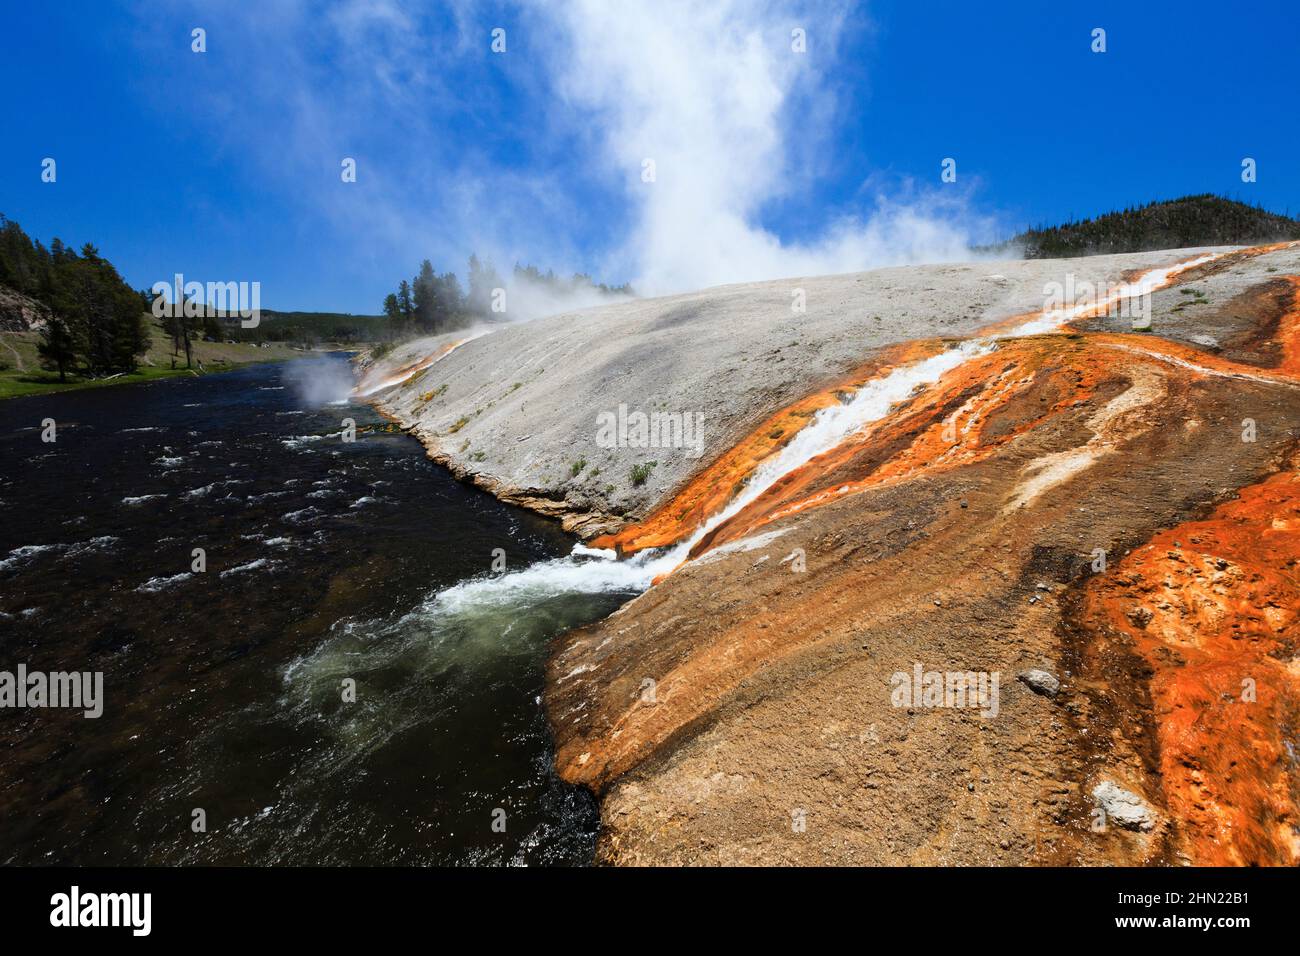 Rivière Firehole, eau chaude de l'Excelsior Geyser qui se jette dans la rivière, bassin de Midway Geyser, Yellowstone, Wyoming Banque D'Images